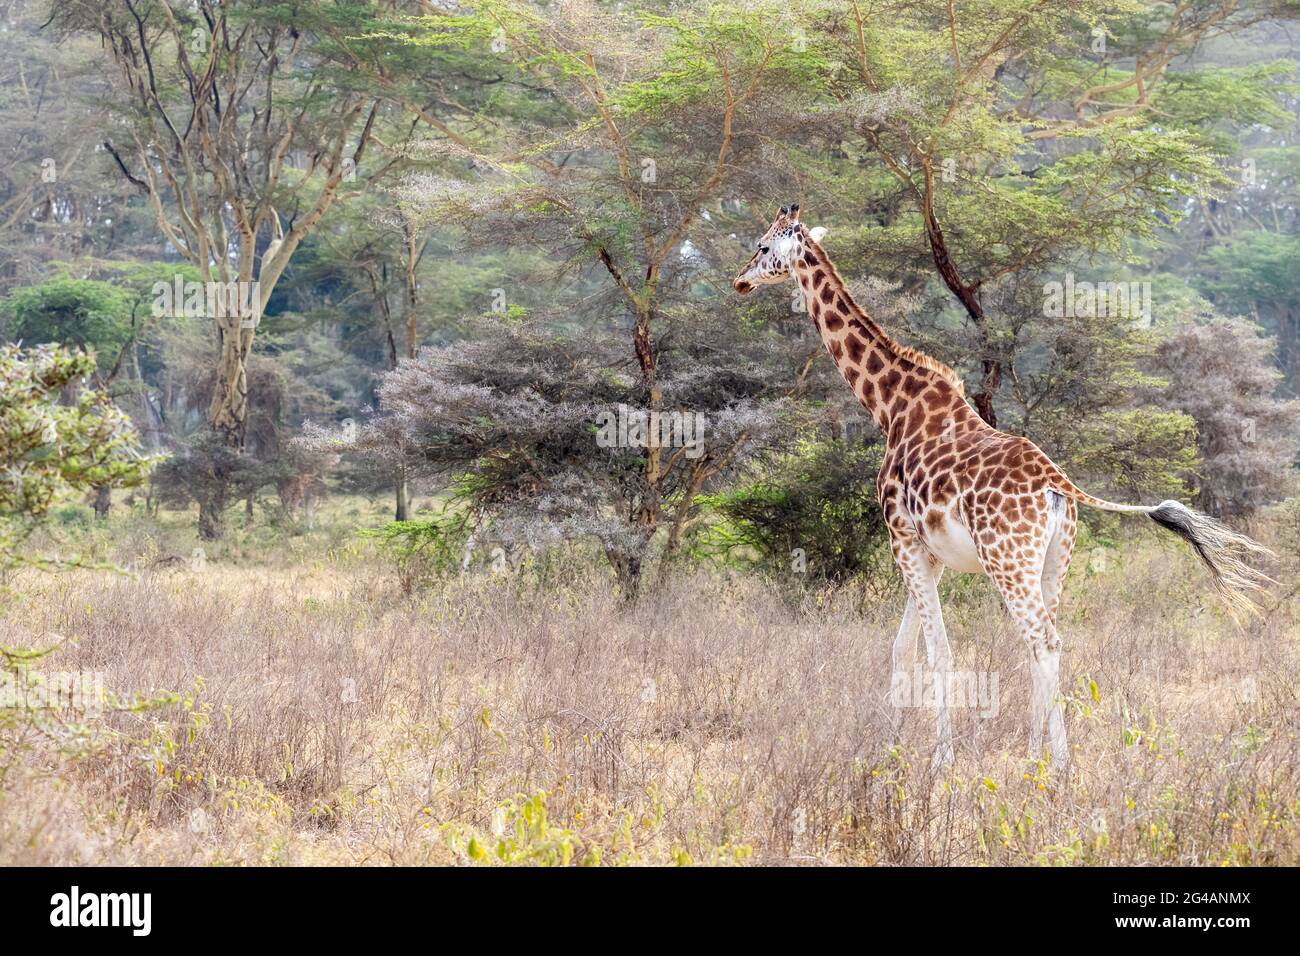 La Giraffe de Rothschild, giraffa camelopardalis rothschild, marchant parmi les arbres de fièvre du parc national du lac Nakuru, Kenya. Banque D'Images